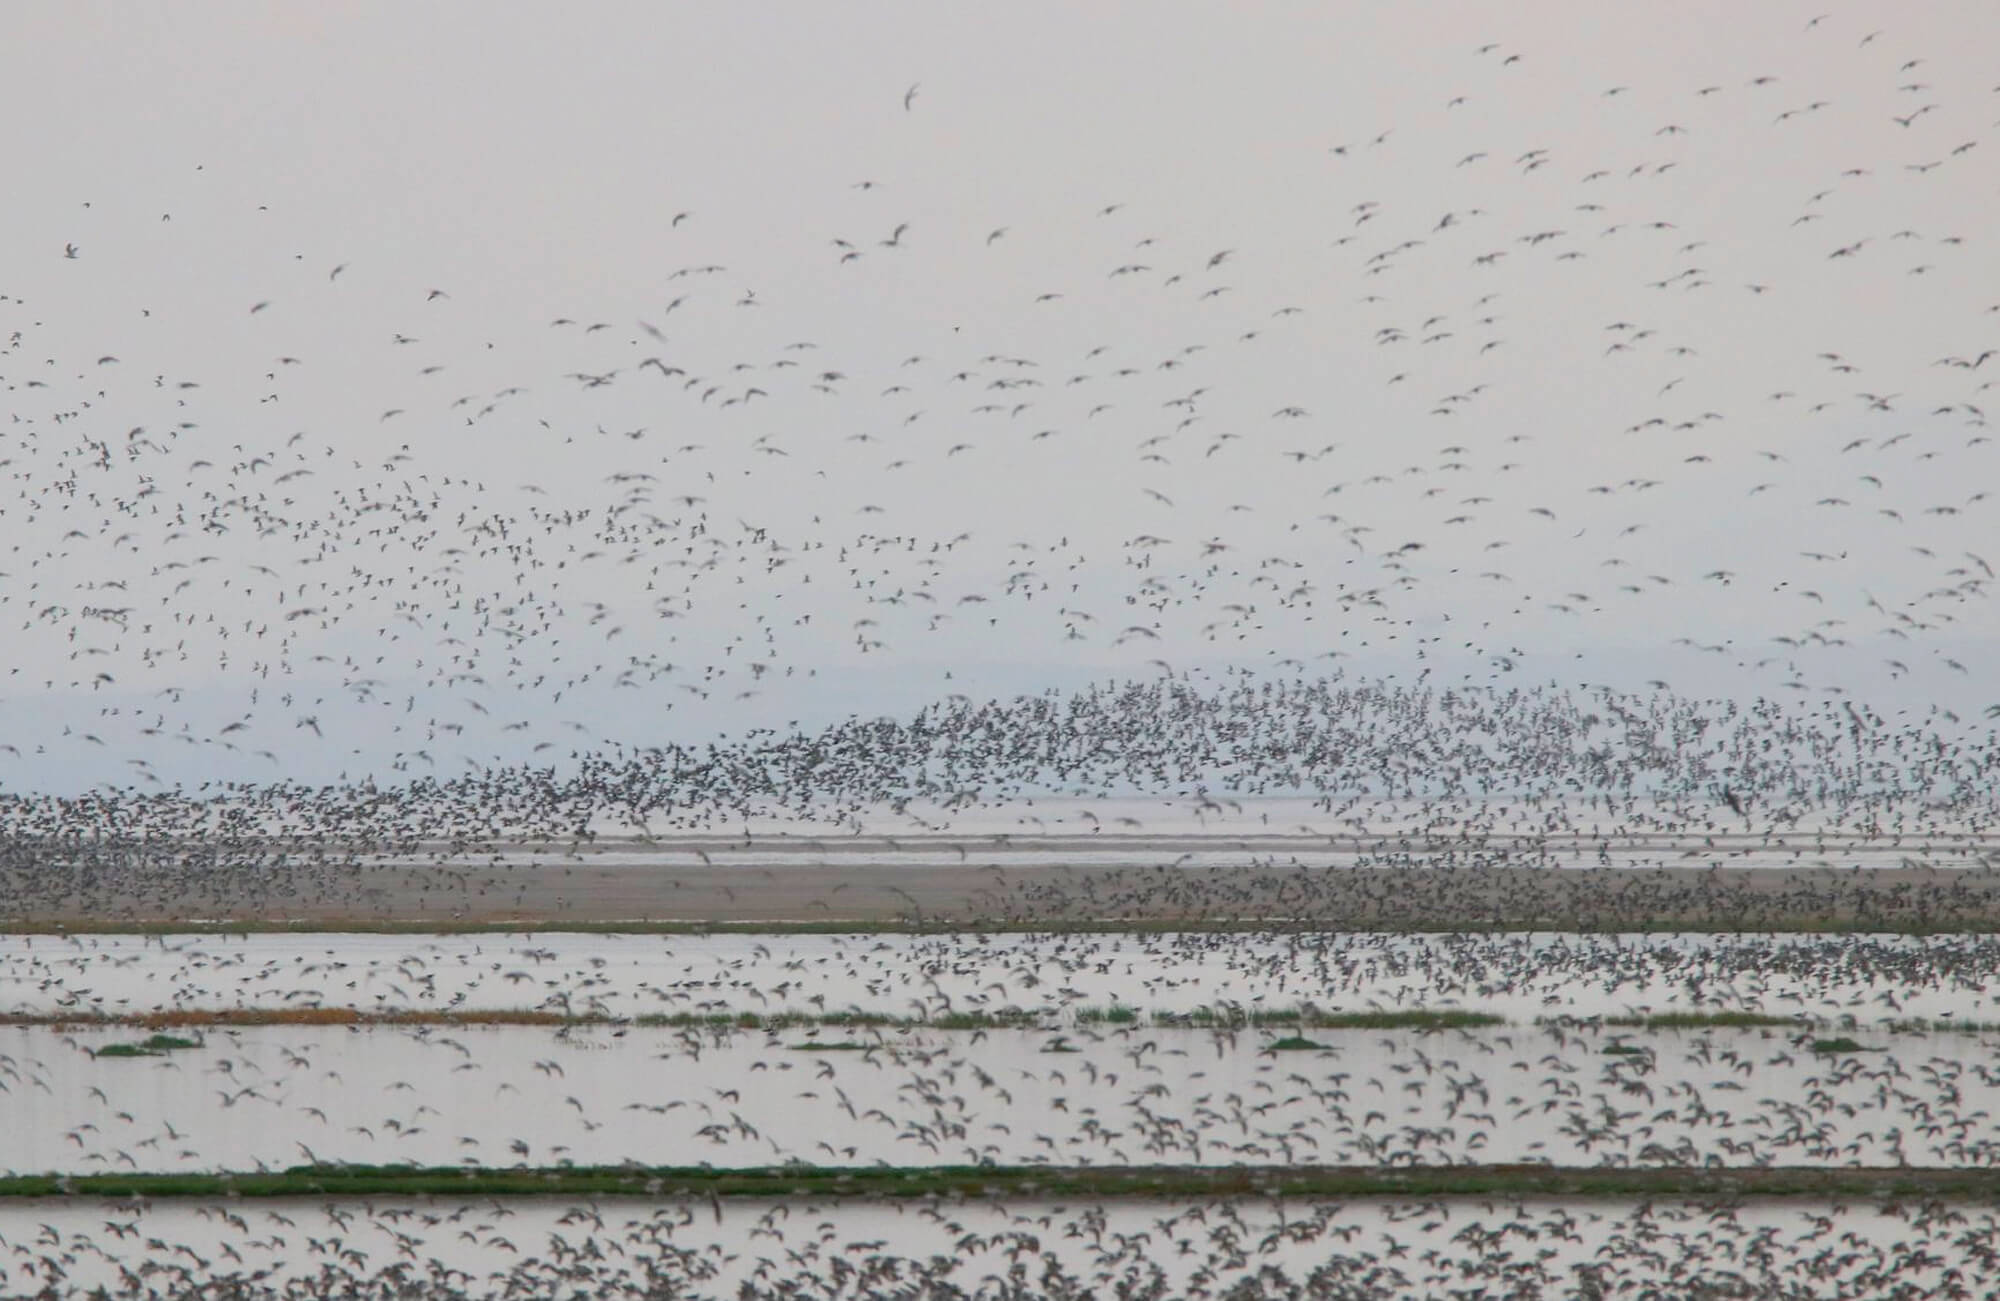 Phalarope Migration | Great Salt Lake Birding Tour